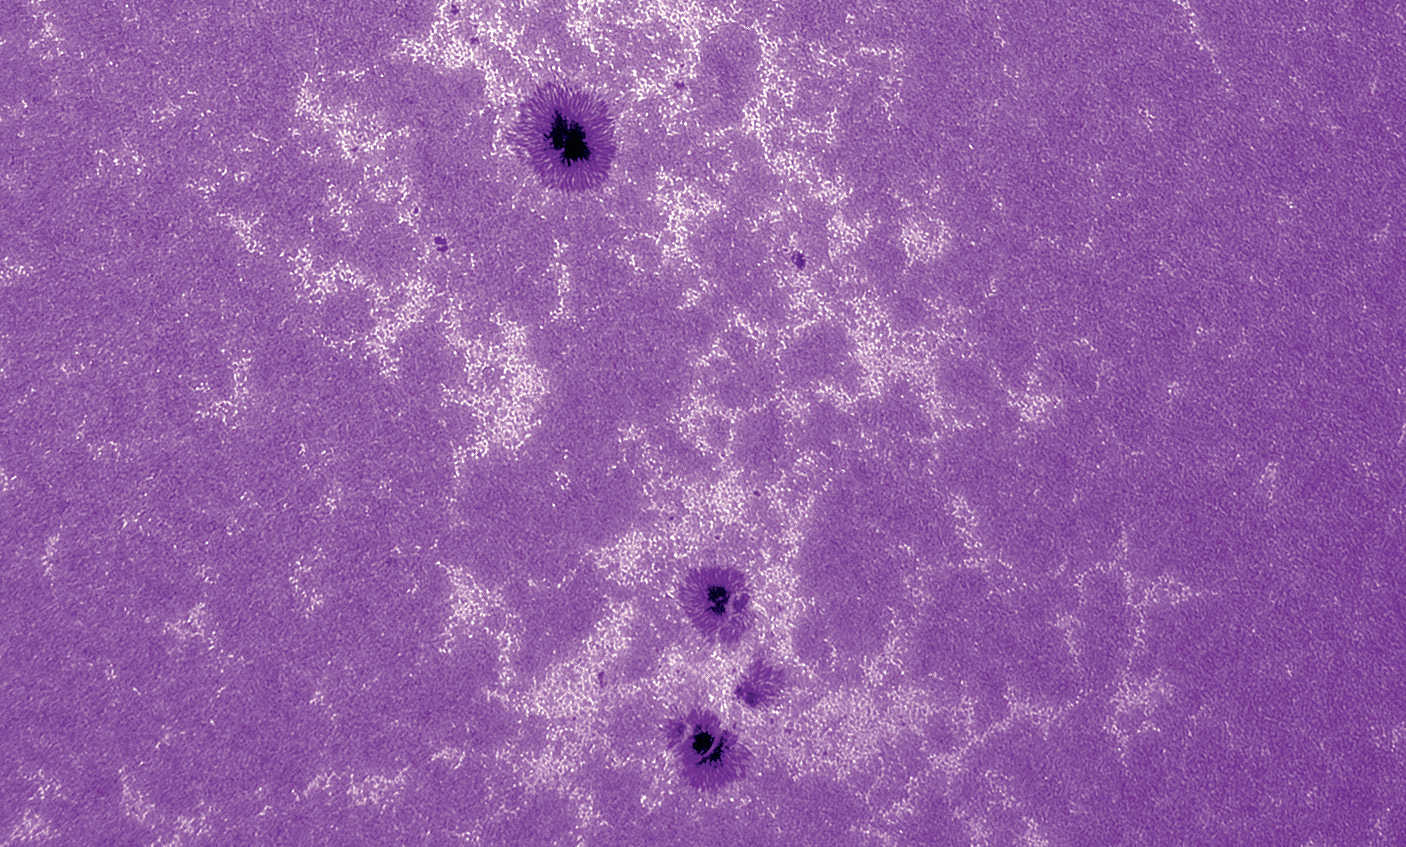 Kalciumbild av solen. Lunt CaK-modul (B600) på refraktor med brännvidd 2 250 mm, öppning 130 mm, okyld CCD-kamera; 500 av
2 500 enskilda bilder bearbetade i Avistack och Photoshop. U. Dittler